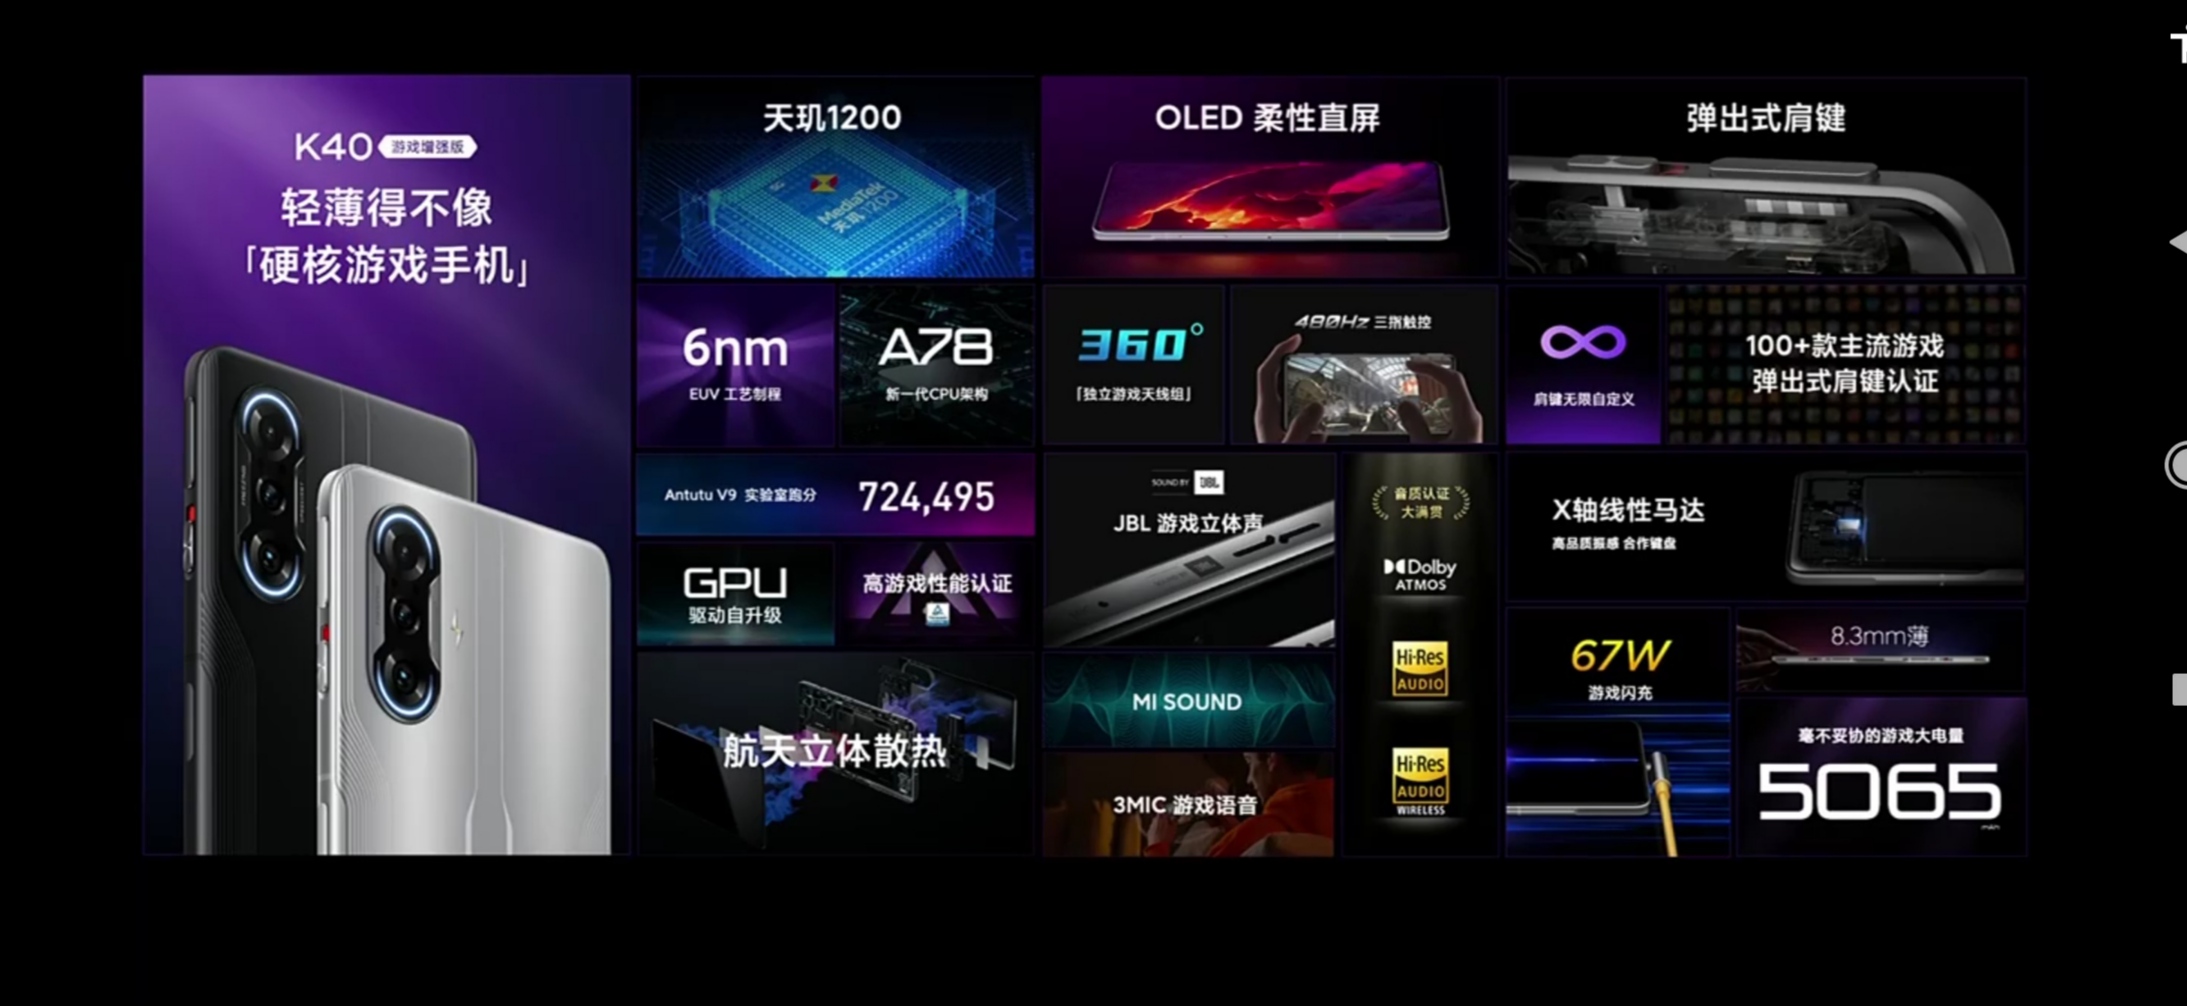 Xiaomi k40 game enhanced edition. Xiaomi Redmi k40 Gaming. Редми к40 гейминг эдишн. Xiaomi Redmi 40 game enhanced Edition. Redmi k40 характеристики.